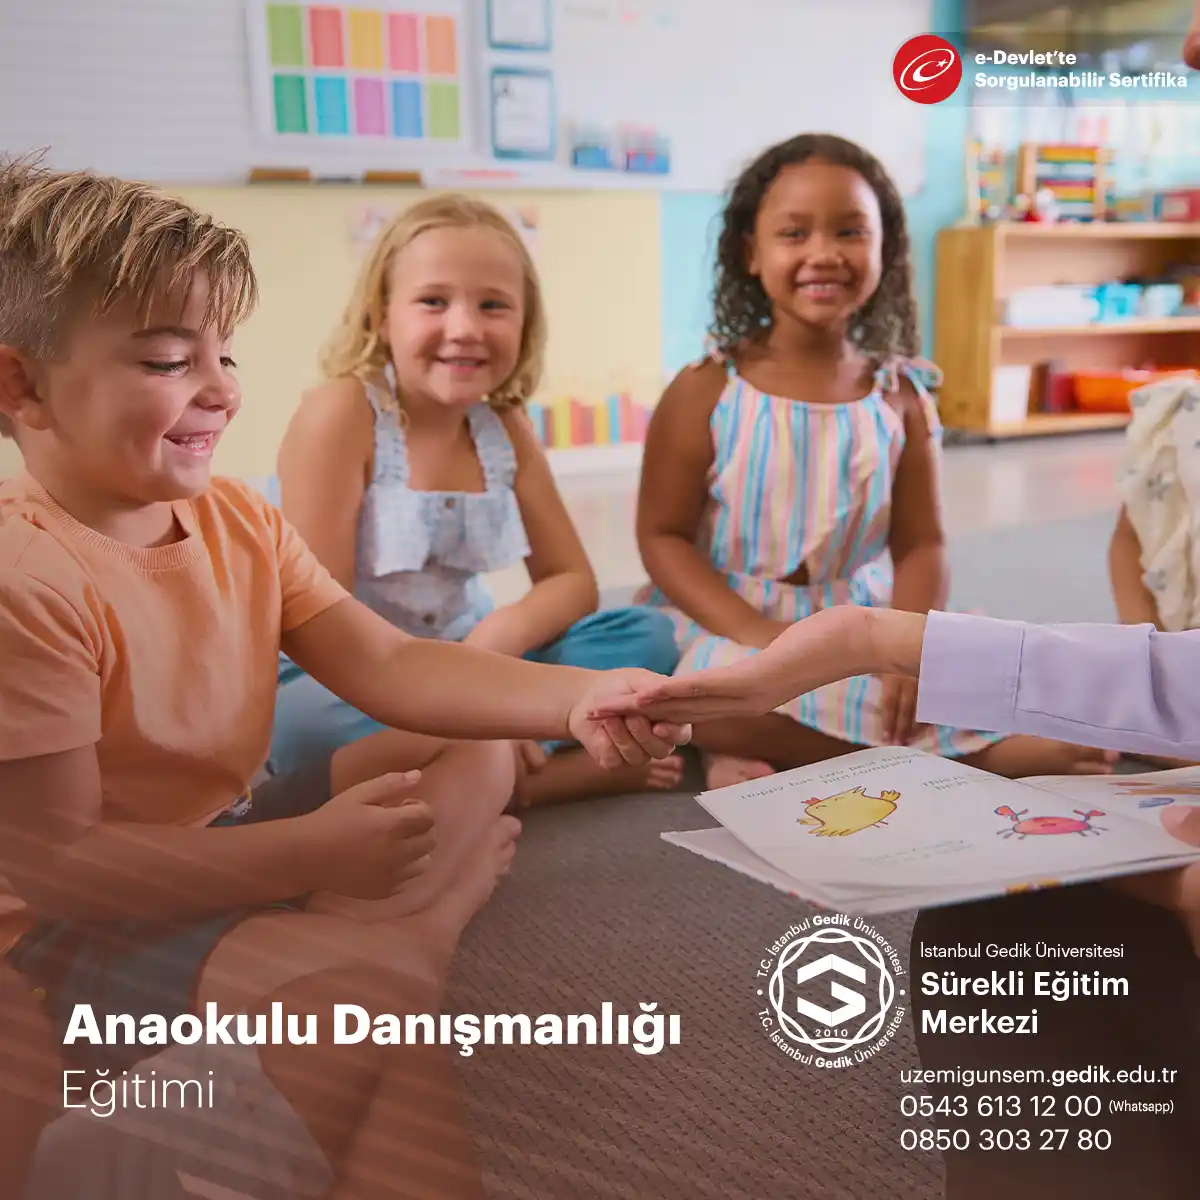 Anaokulu danışmanlığı sertifika programı, anaokulu öğretmenleri, psikologlar, pedagoglar ve ebeveynler gibi anaokulu çağındaki çocuklarla ilgili olan kişiler için tasarlanmıştır.